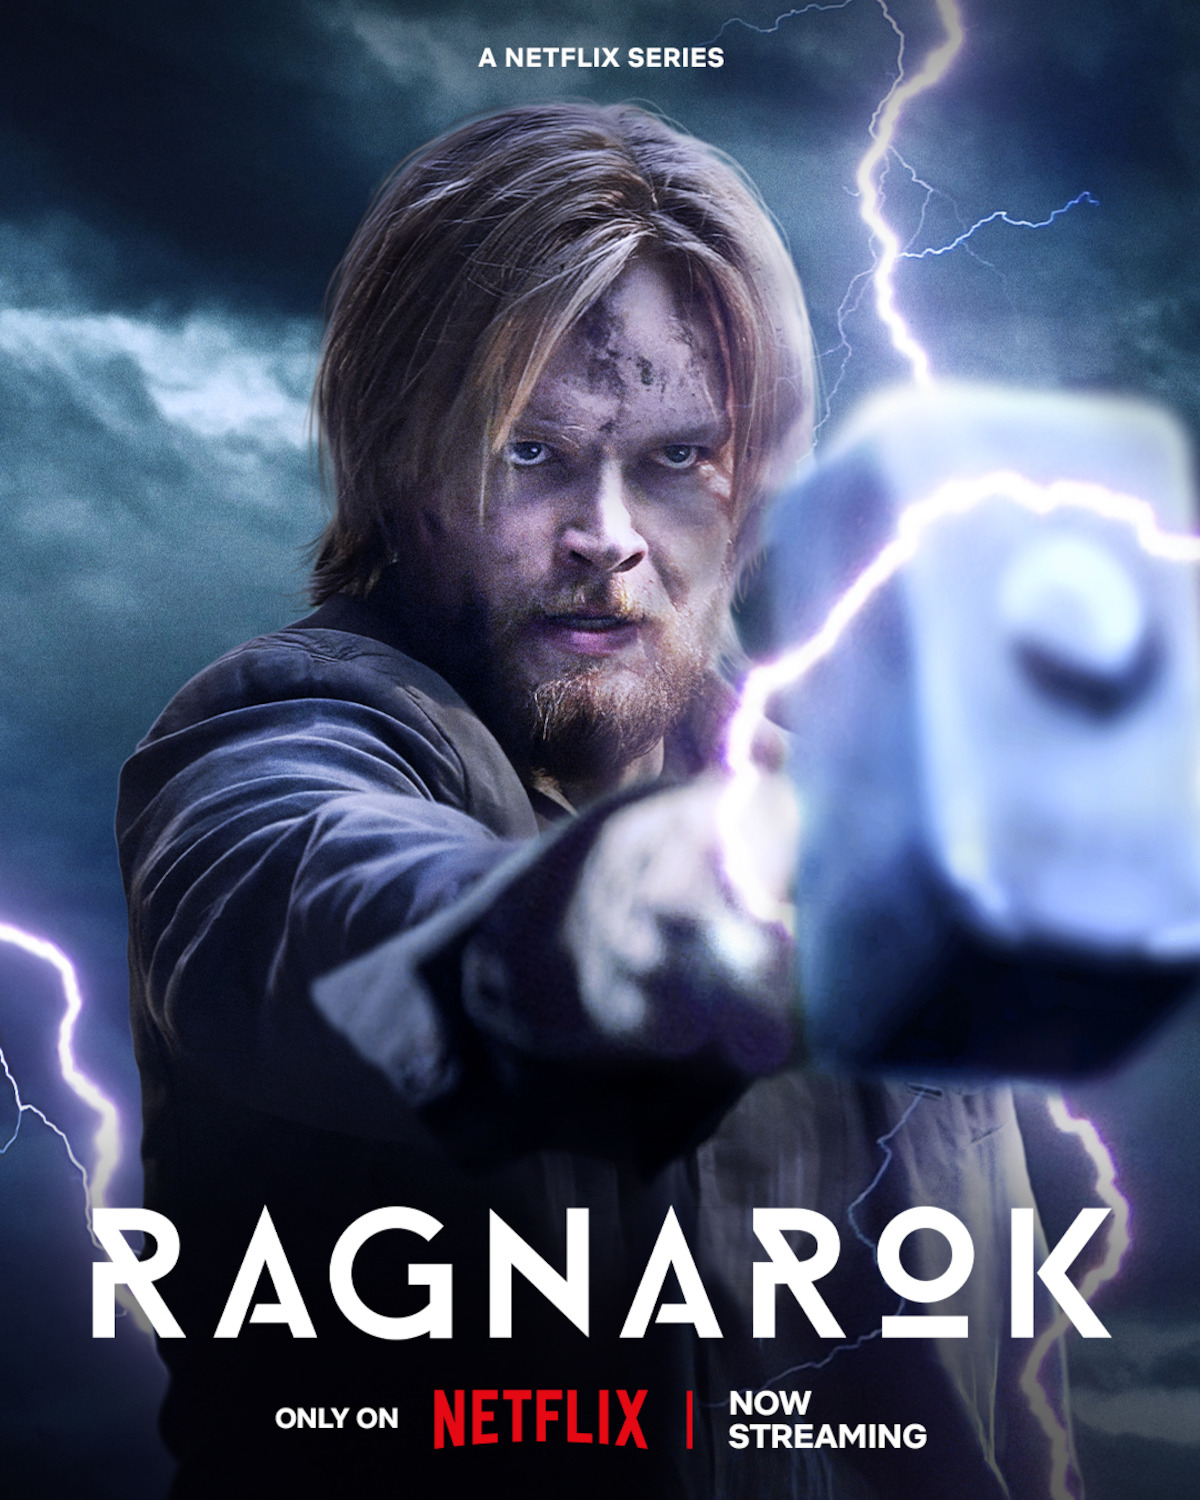 Ragnarok Season 2 – Review, Netflix Mythology Series